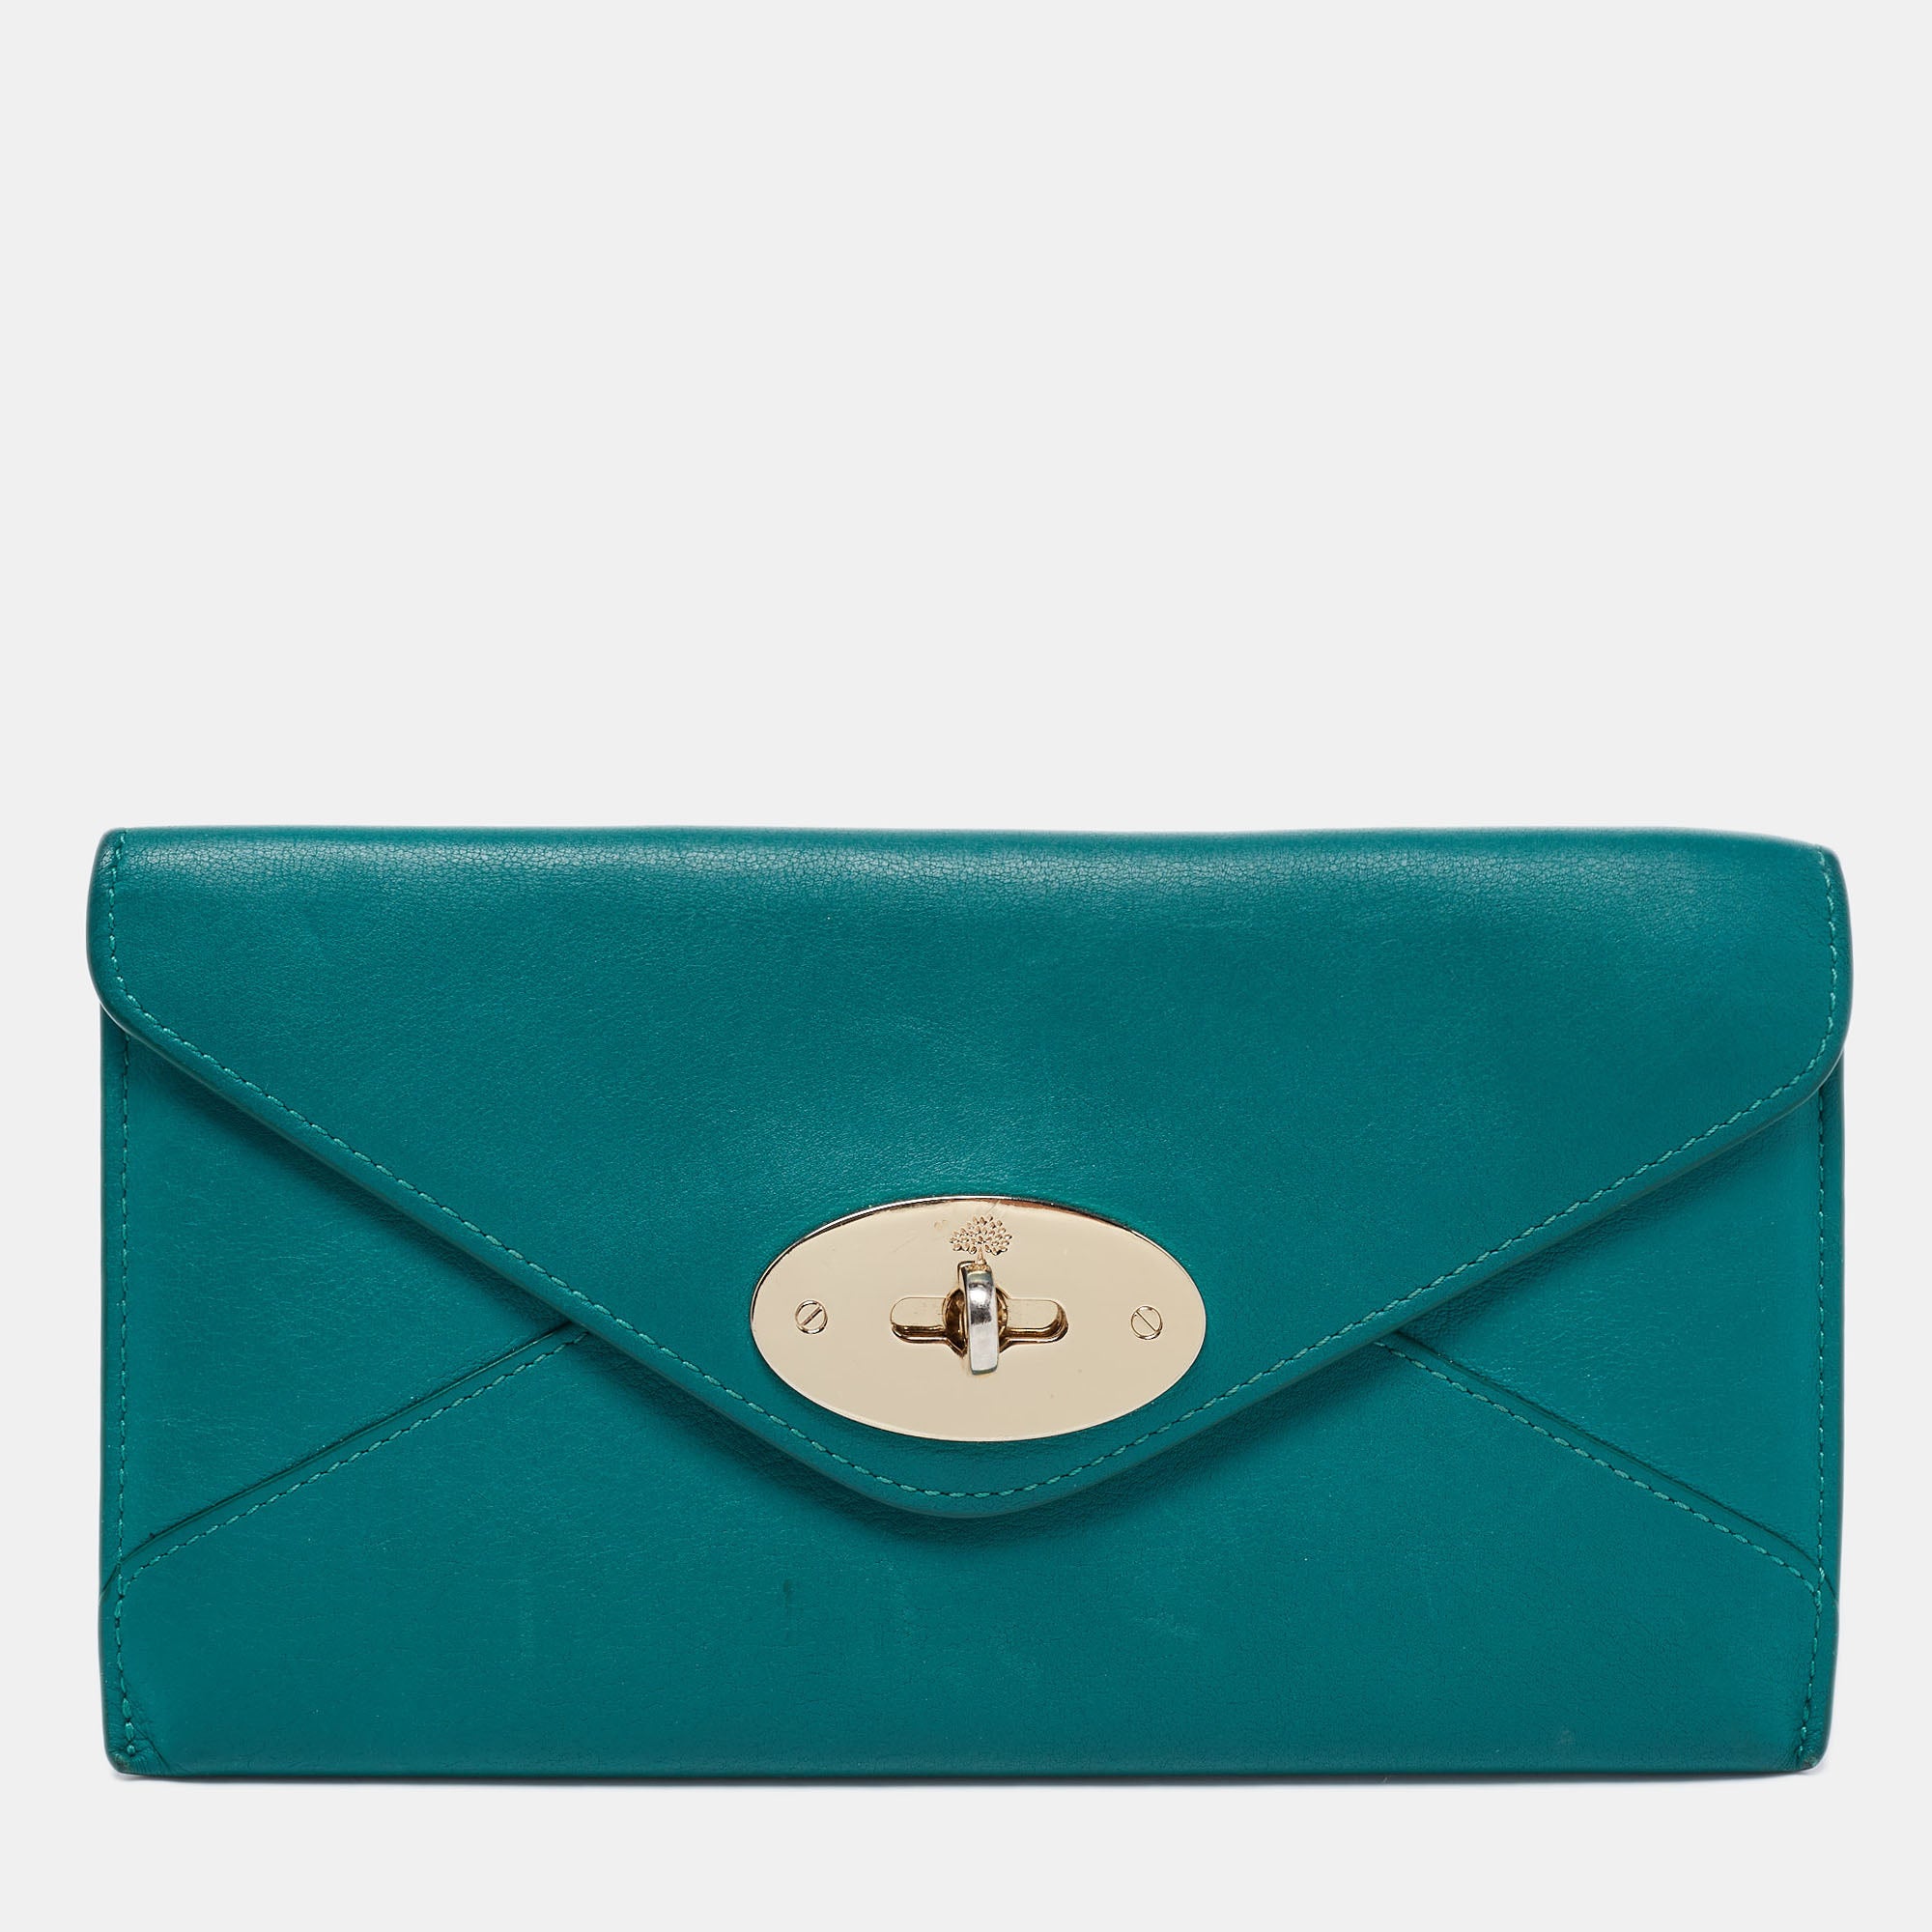 Anais - Black Leather Envelope Bag - Belle Couleur ®